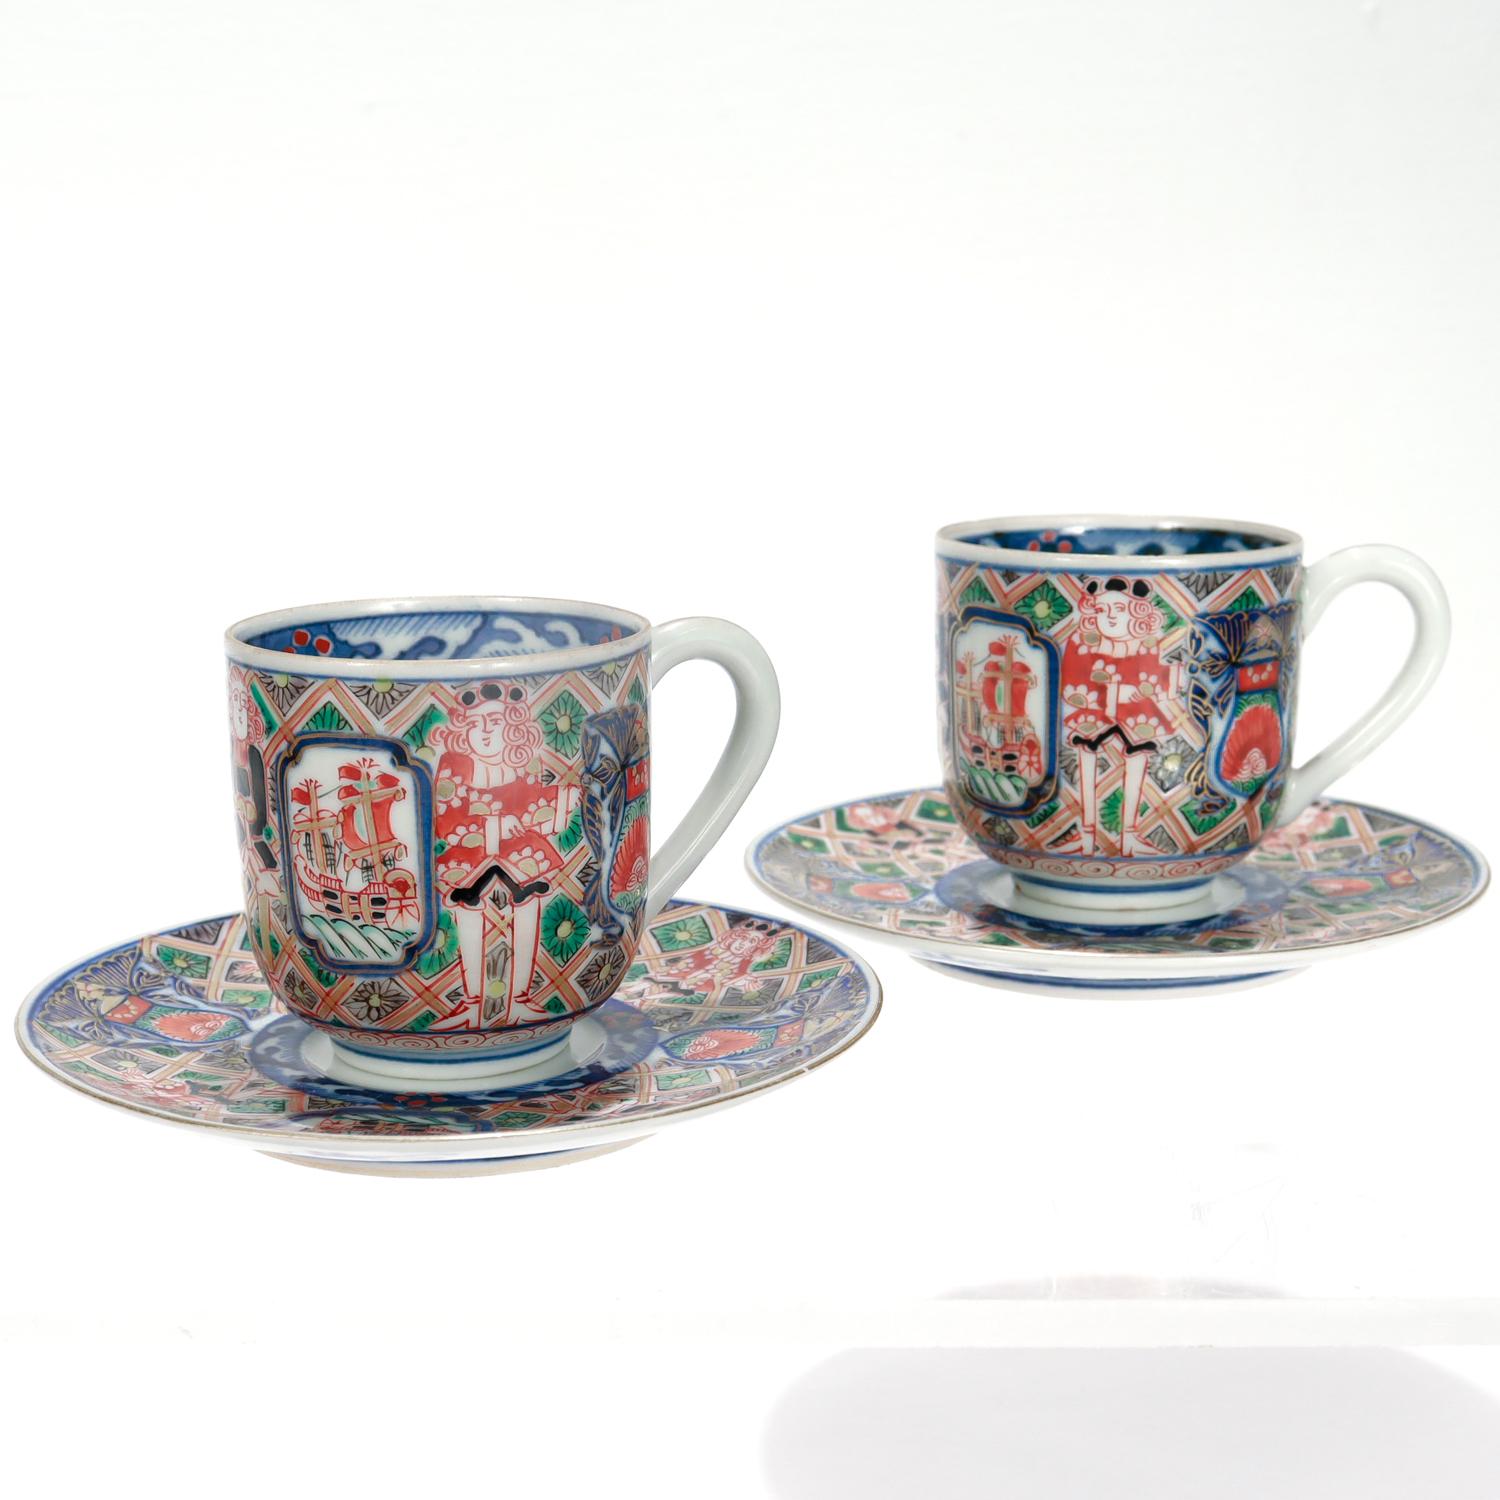 Ein feines Paar von antiken japanischen Imari Porzellan Demitasse Kaffee oder Tee Tassen und Untertassen.

Nach dem Muster 